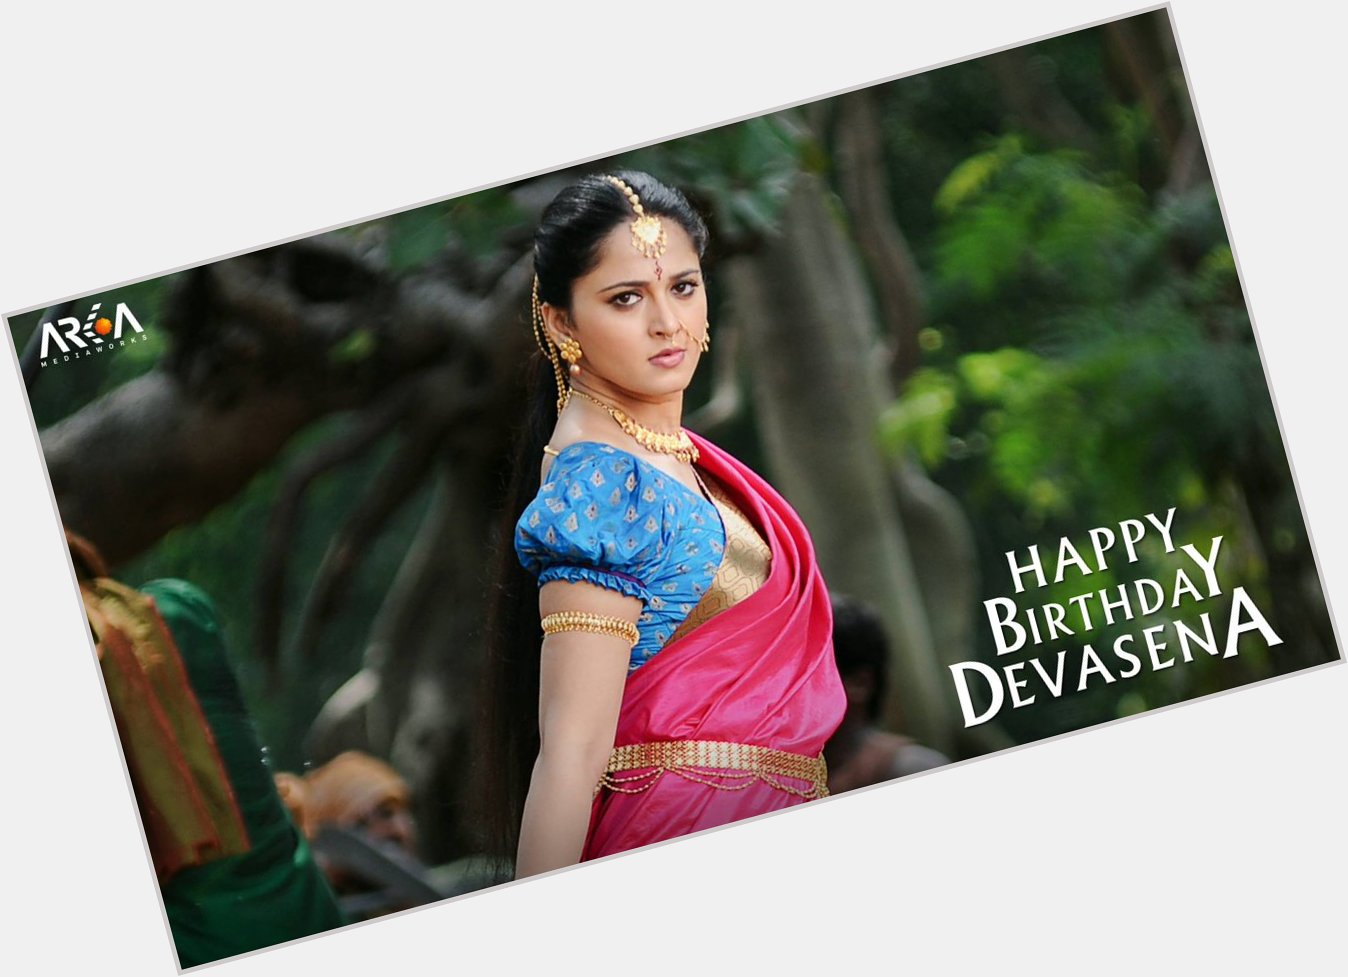 Wishing our Devasena, Anushka Shetty, a very Happy Birthday! 